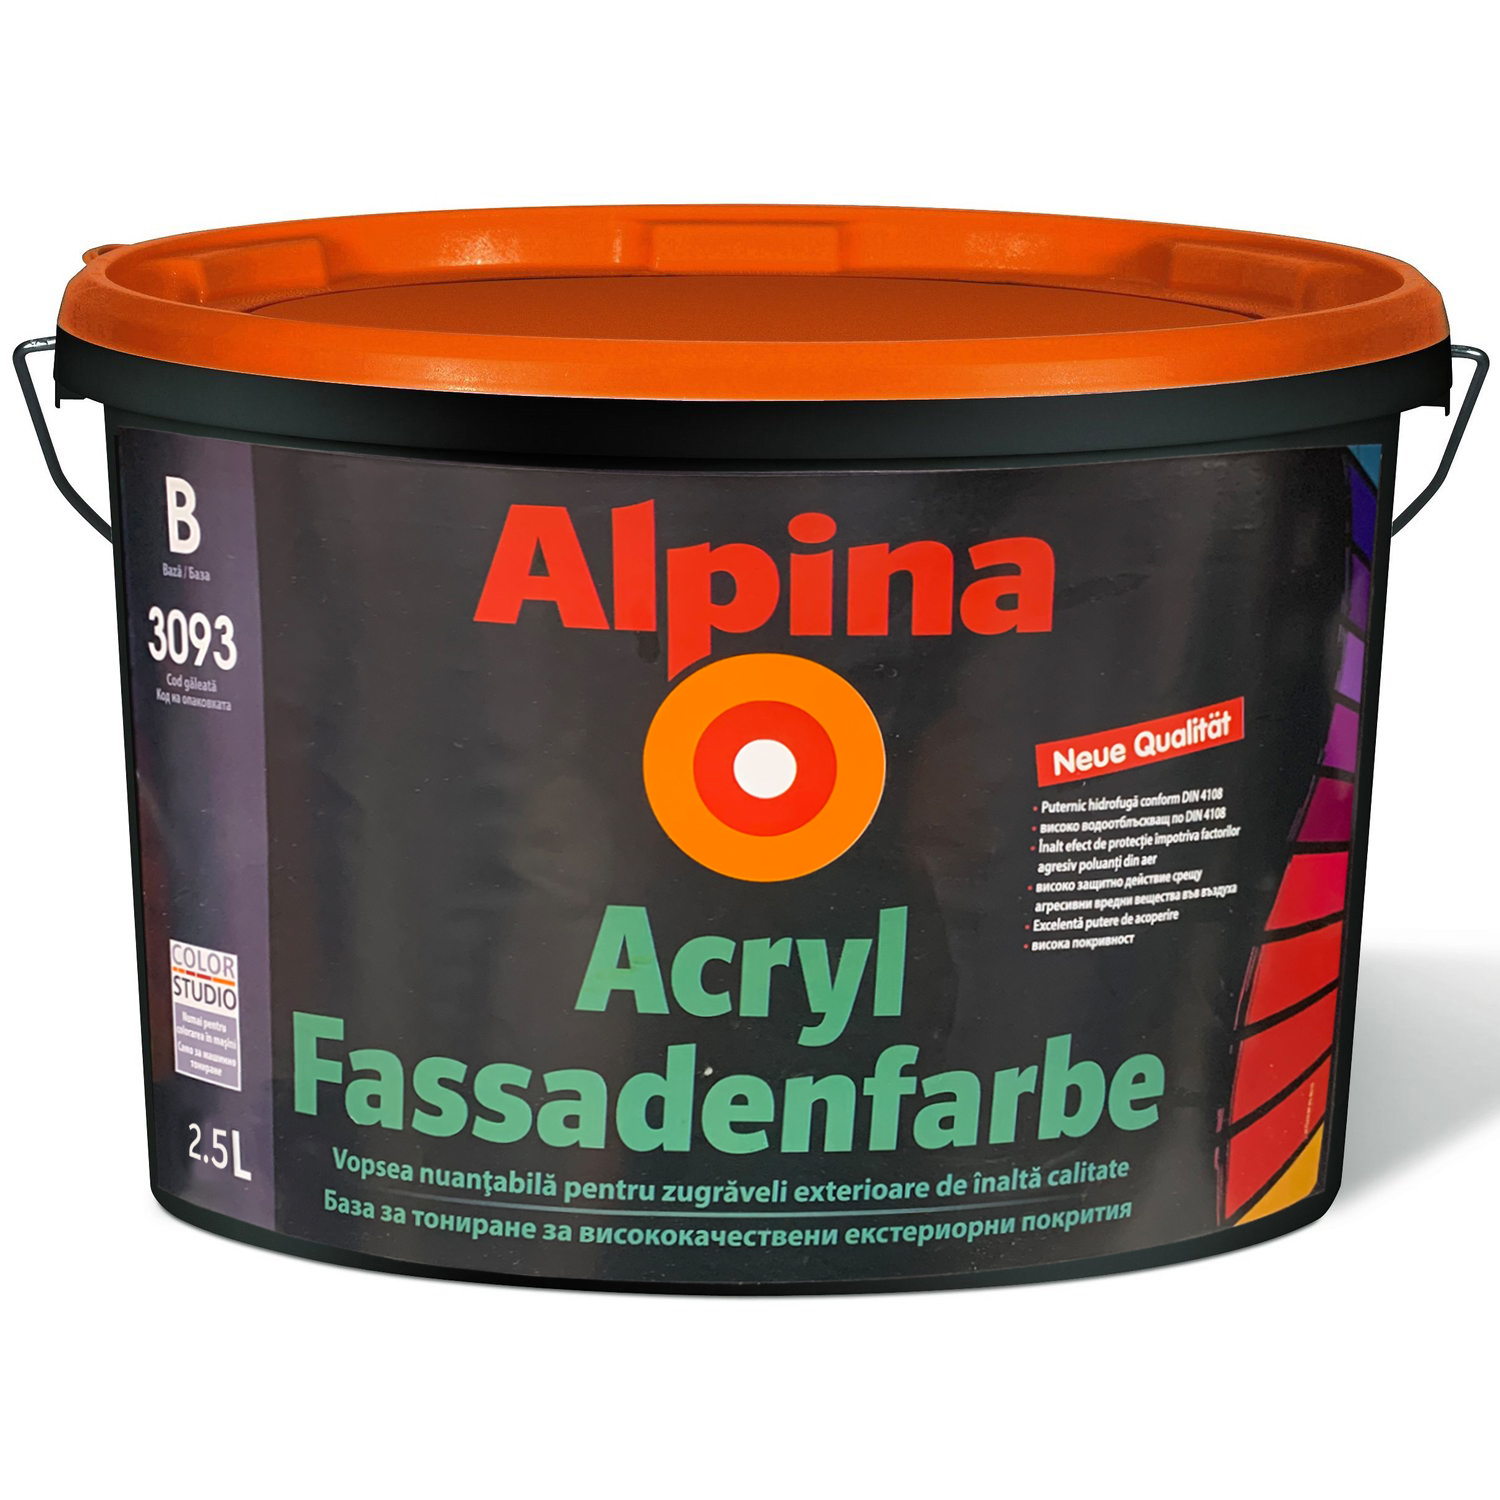 Водоэмульсии Acryl Fassadenfarbe Baza B 2.5 alpina РУМЫНИЯ